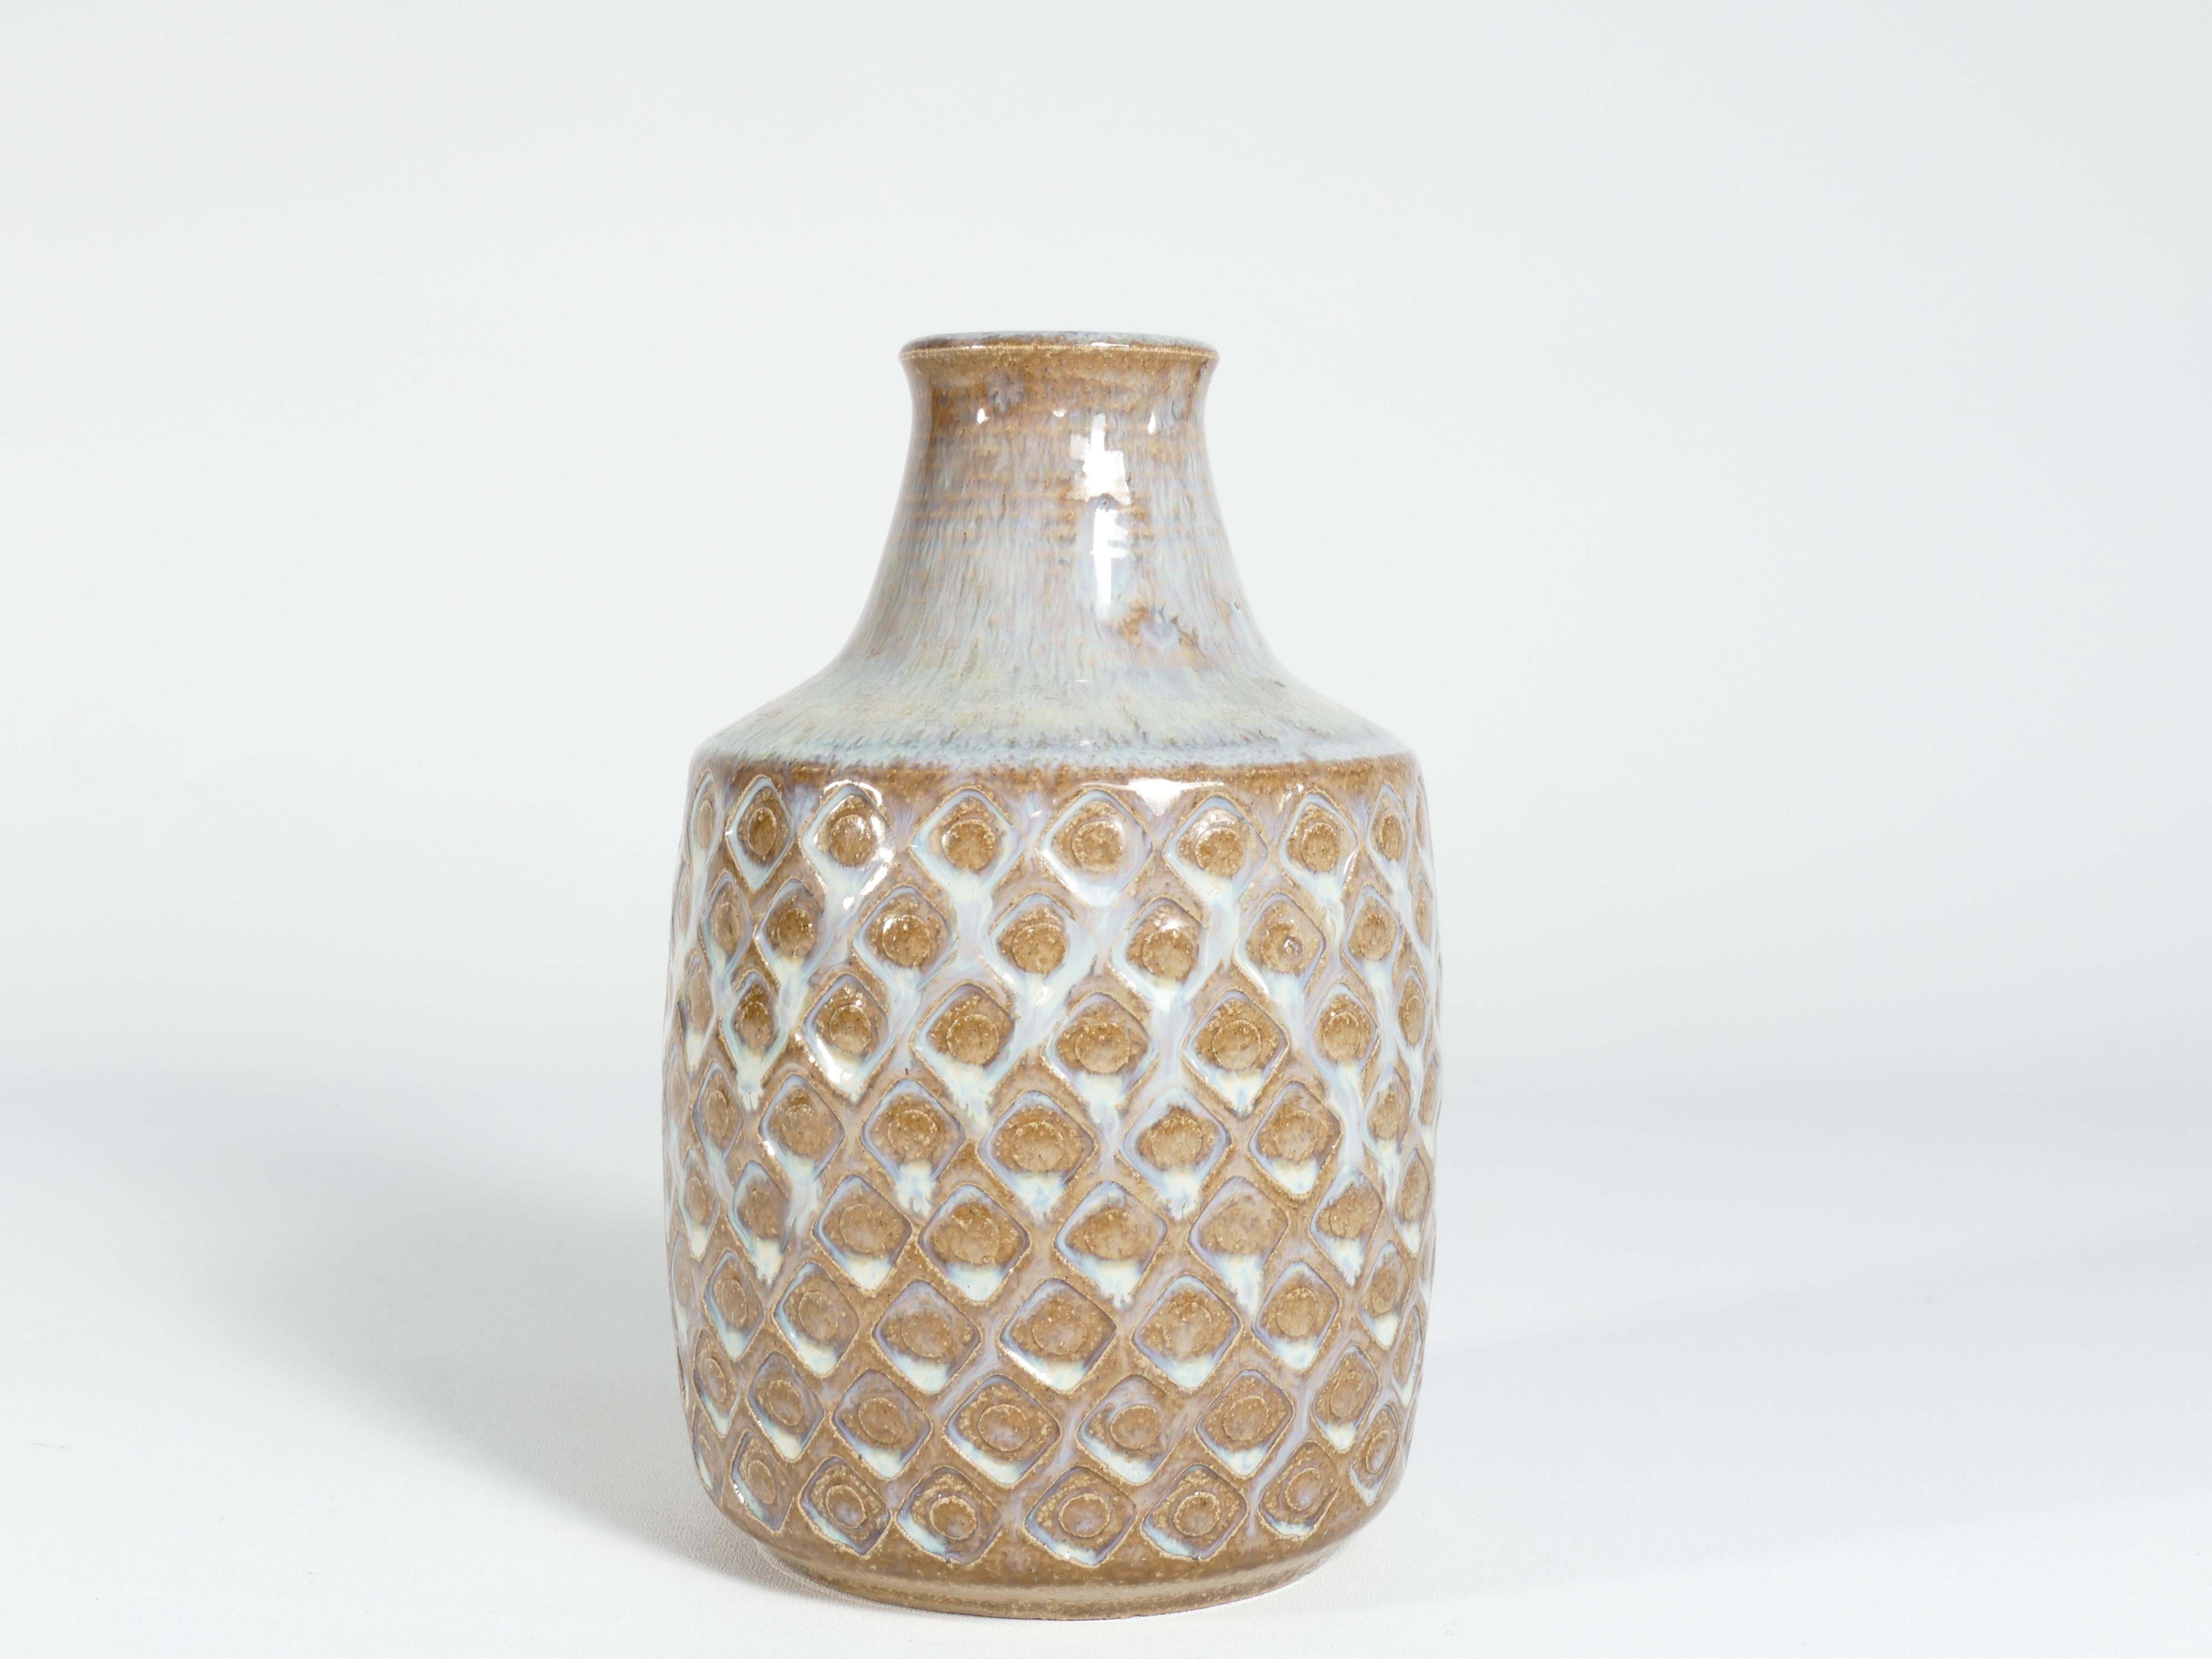 Fabriqué à la main au milieu du XXe siècle, ce vase en grès exquis porte la marque distinctive de Søholm Stentøj. Produit par la célèbre entreprise danoise Soholm Stentoj sur l'île pittoresque de Bornholm, ce vase capture l'essence des sensibilités